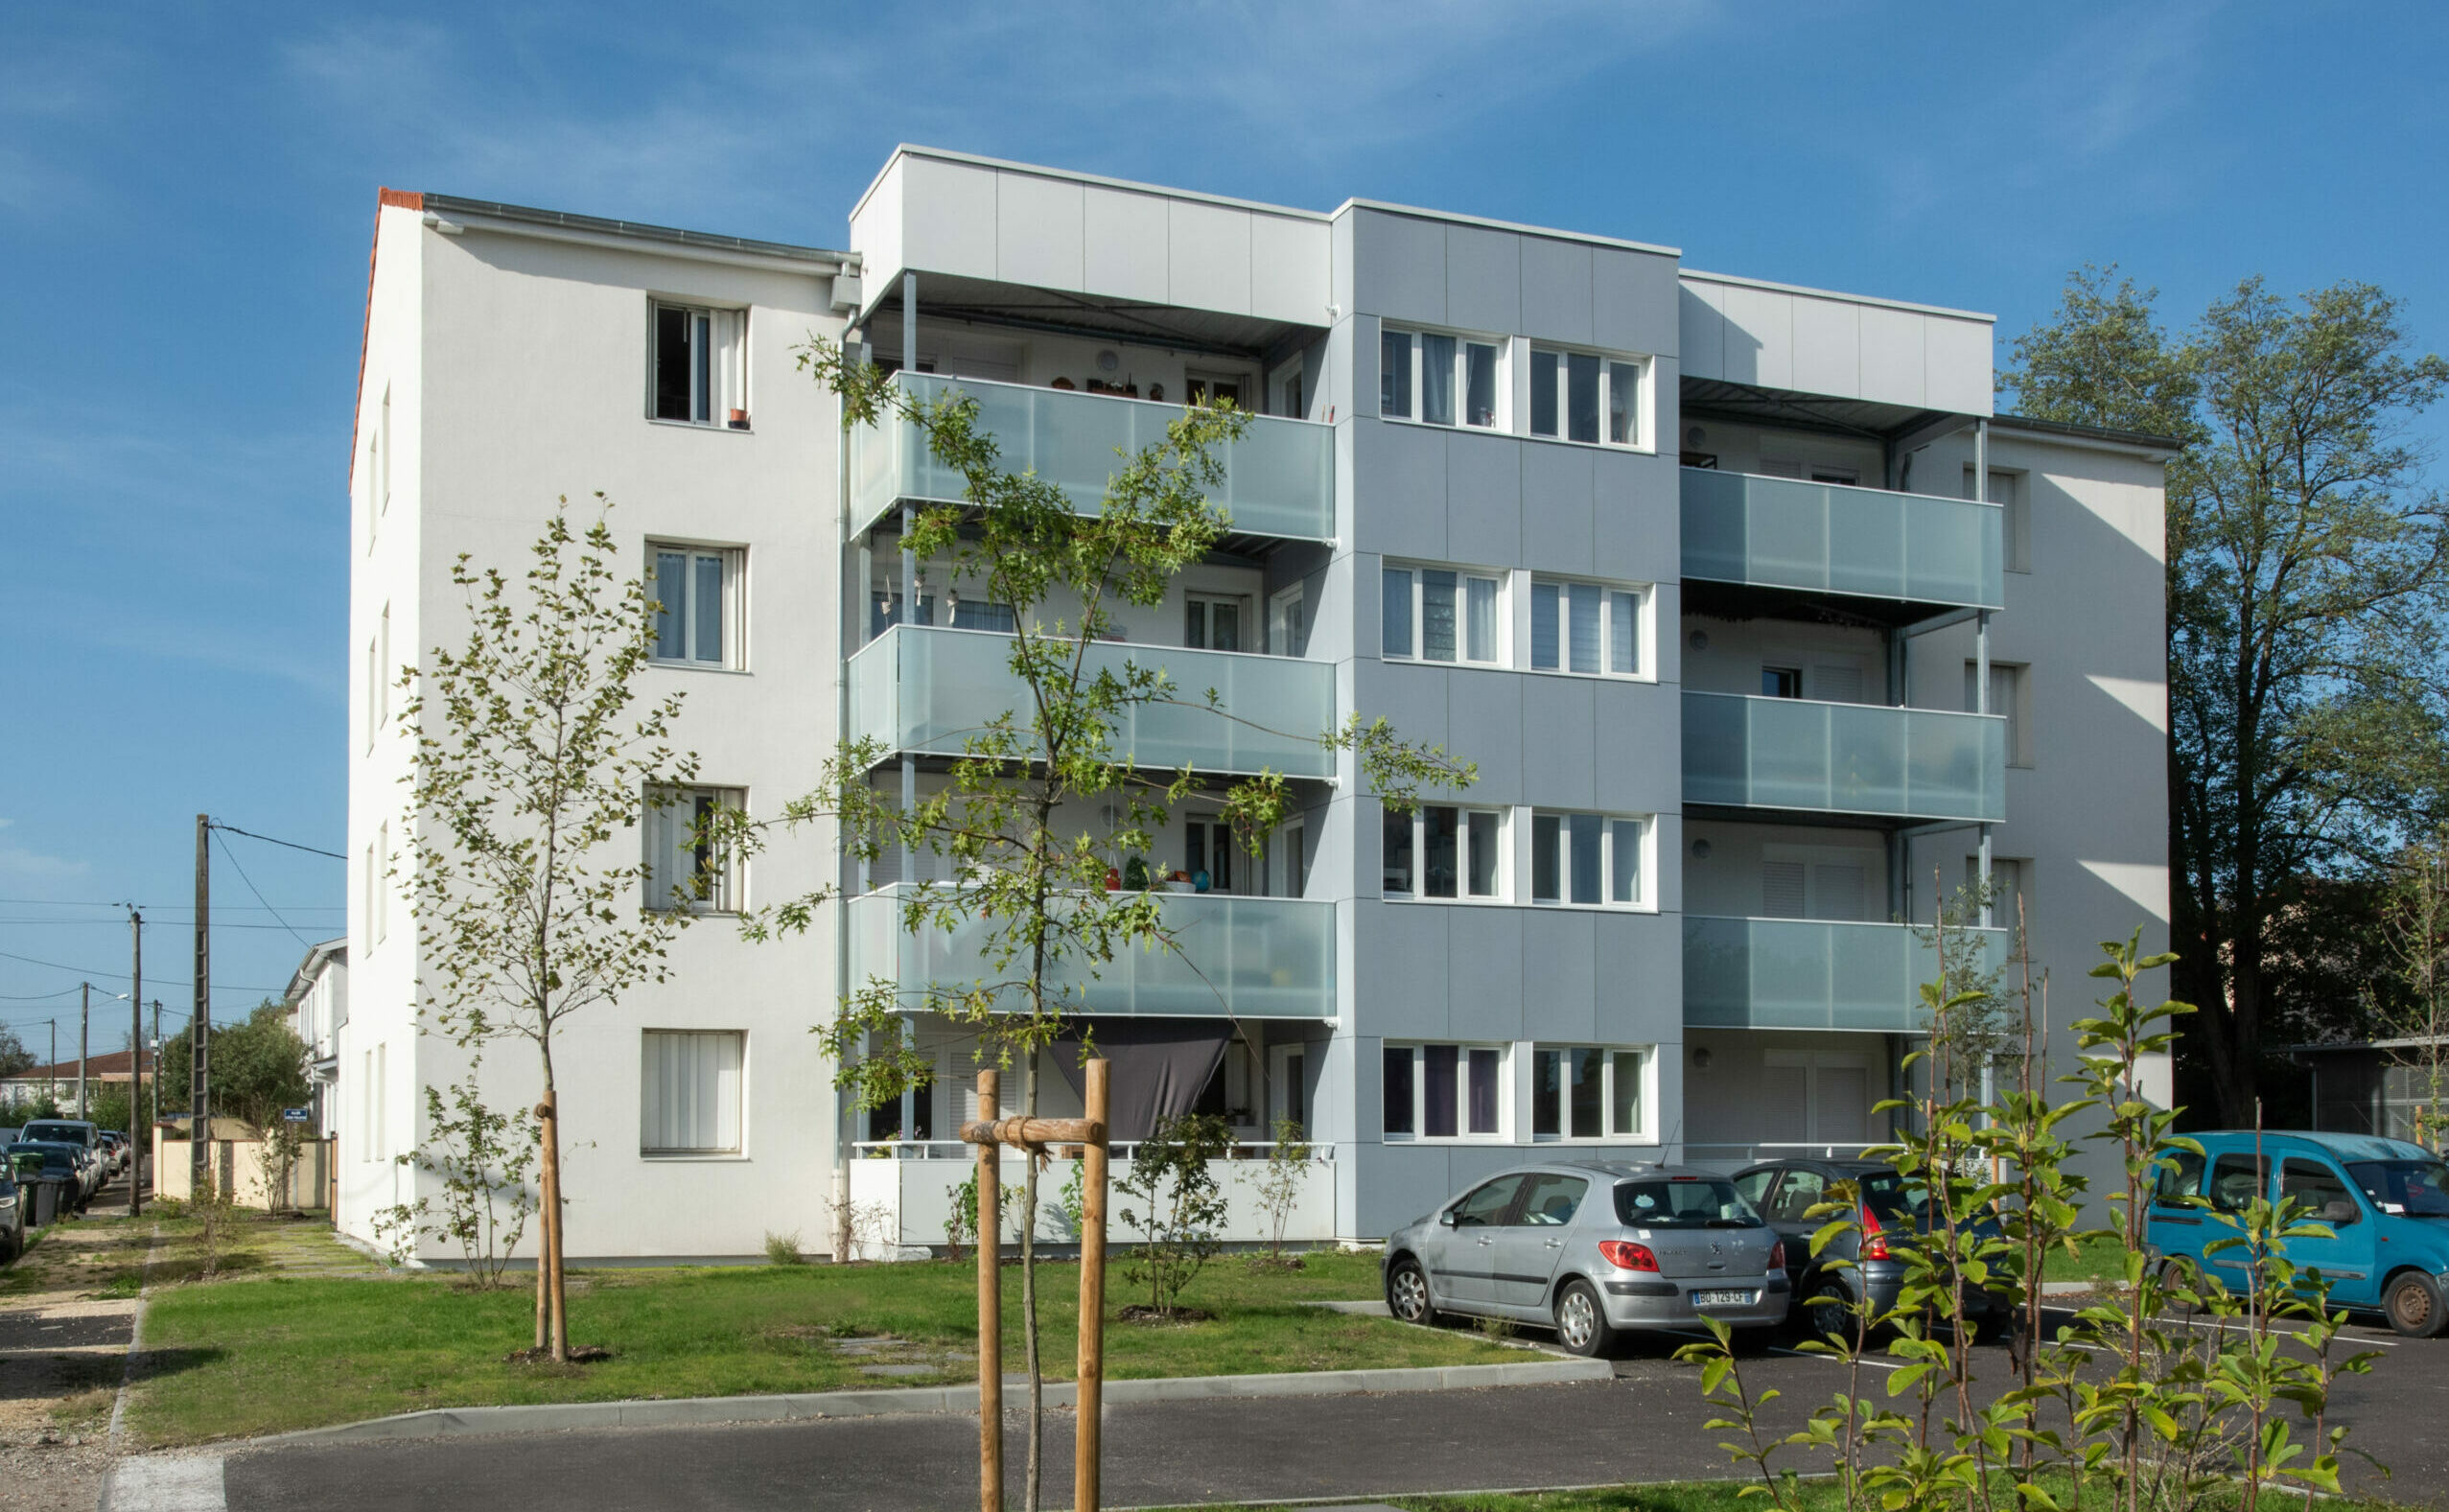 Nouveaux logements à Gujan-Mestras - Gironde Habitat